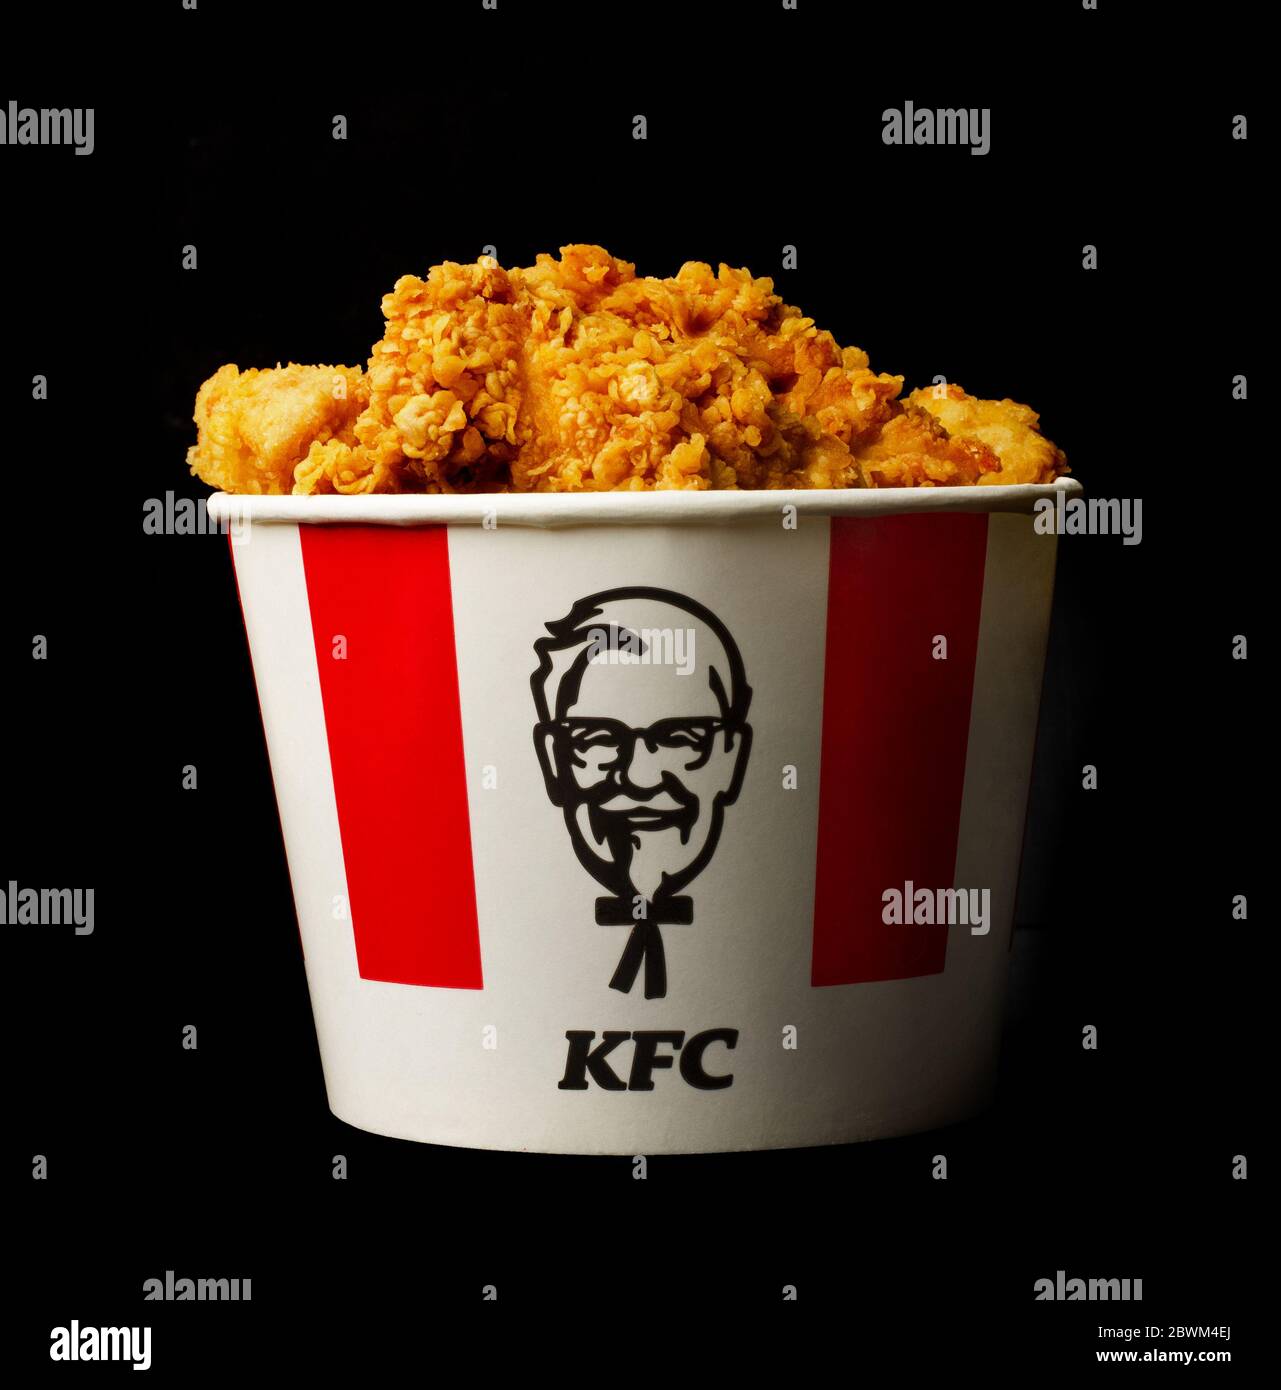 Mosca, Russia - 16 novembre 2019: Un sacco di ali di pollo KFC caldo o strisce in secchio di KFC (Kentucky Fried Chicken) fast food. Foto Stock